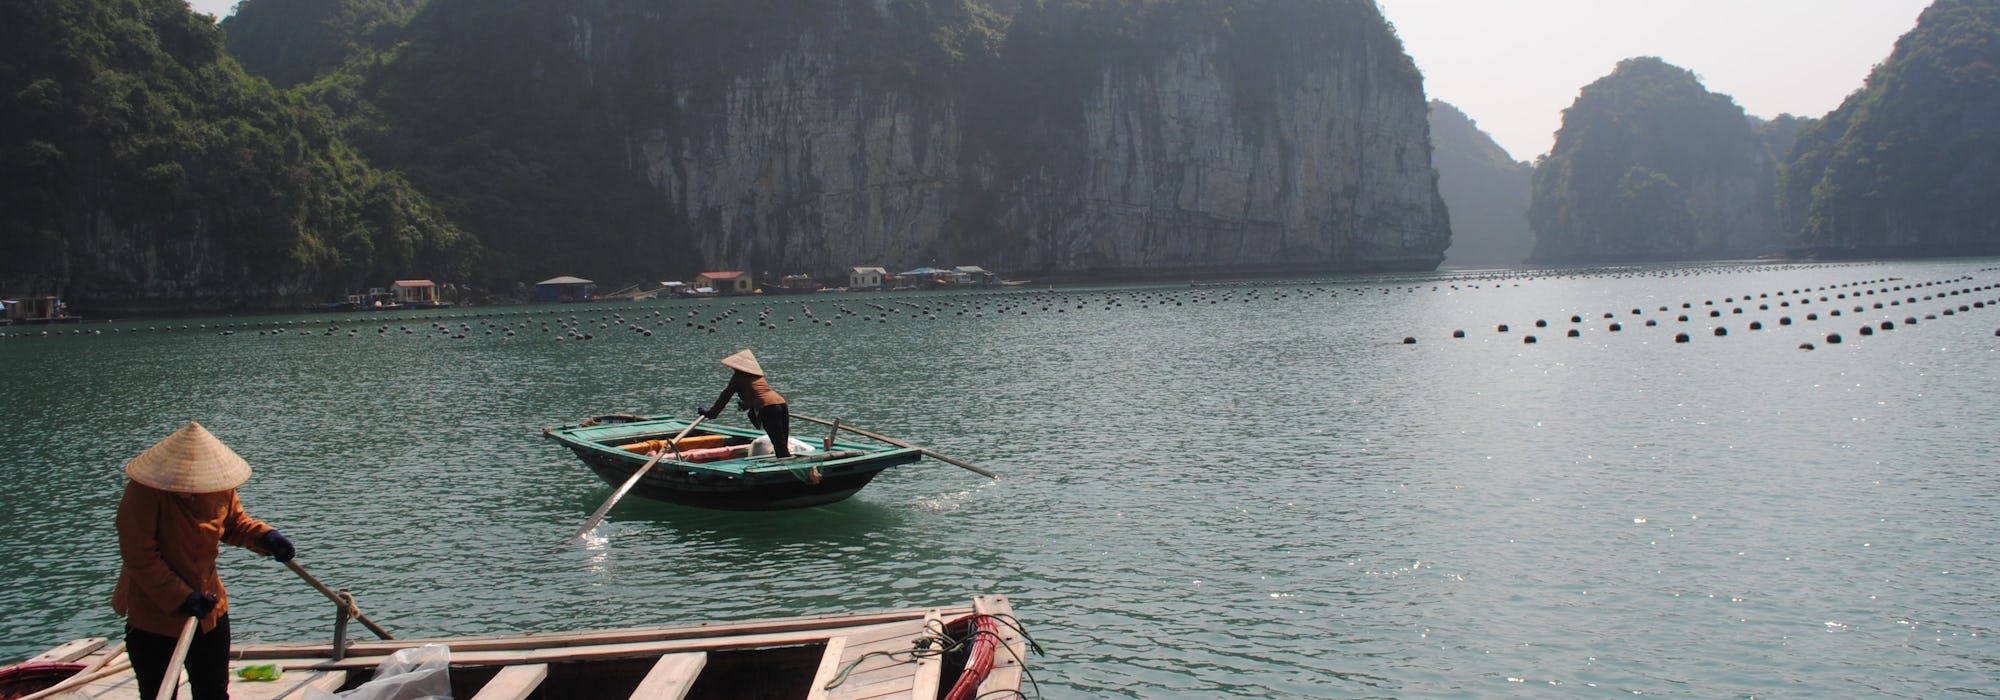 Två människor i båtar paddlar fram framför vackra berg.